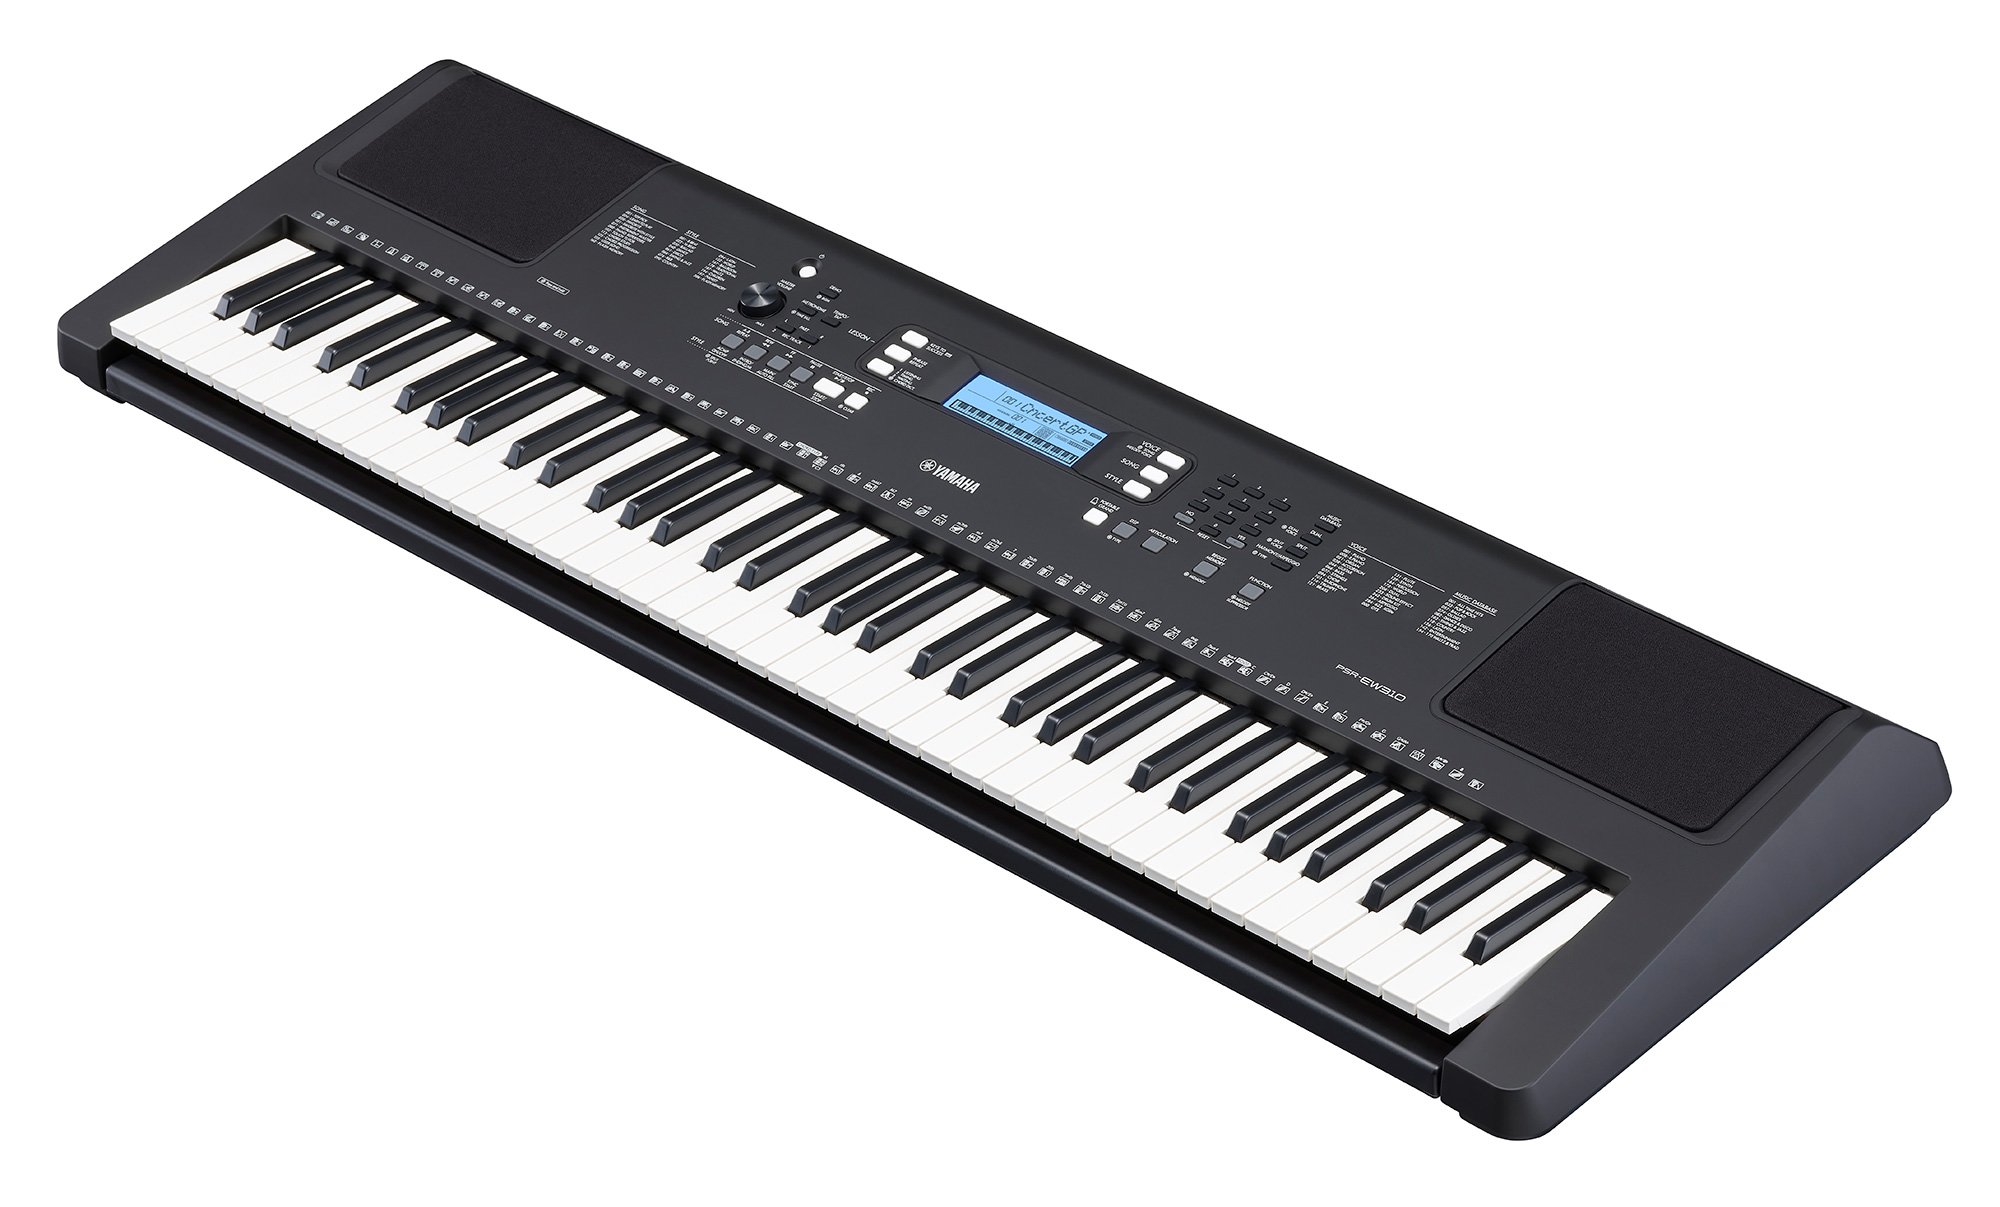 Đàn Organ điện tử/ Portable Keyboard - Yamaha PSR-EW310 (PSR EW310) - Màu đen - Hàng chính hãng